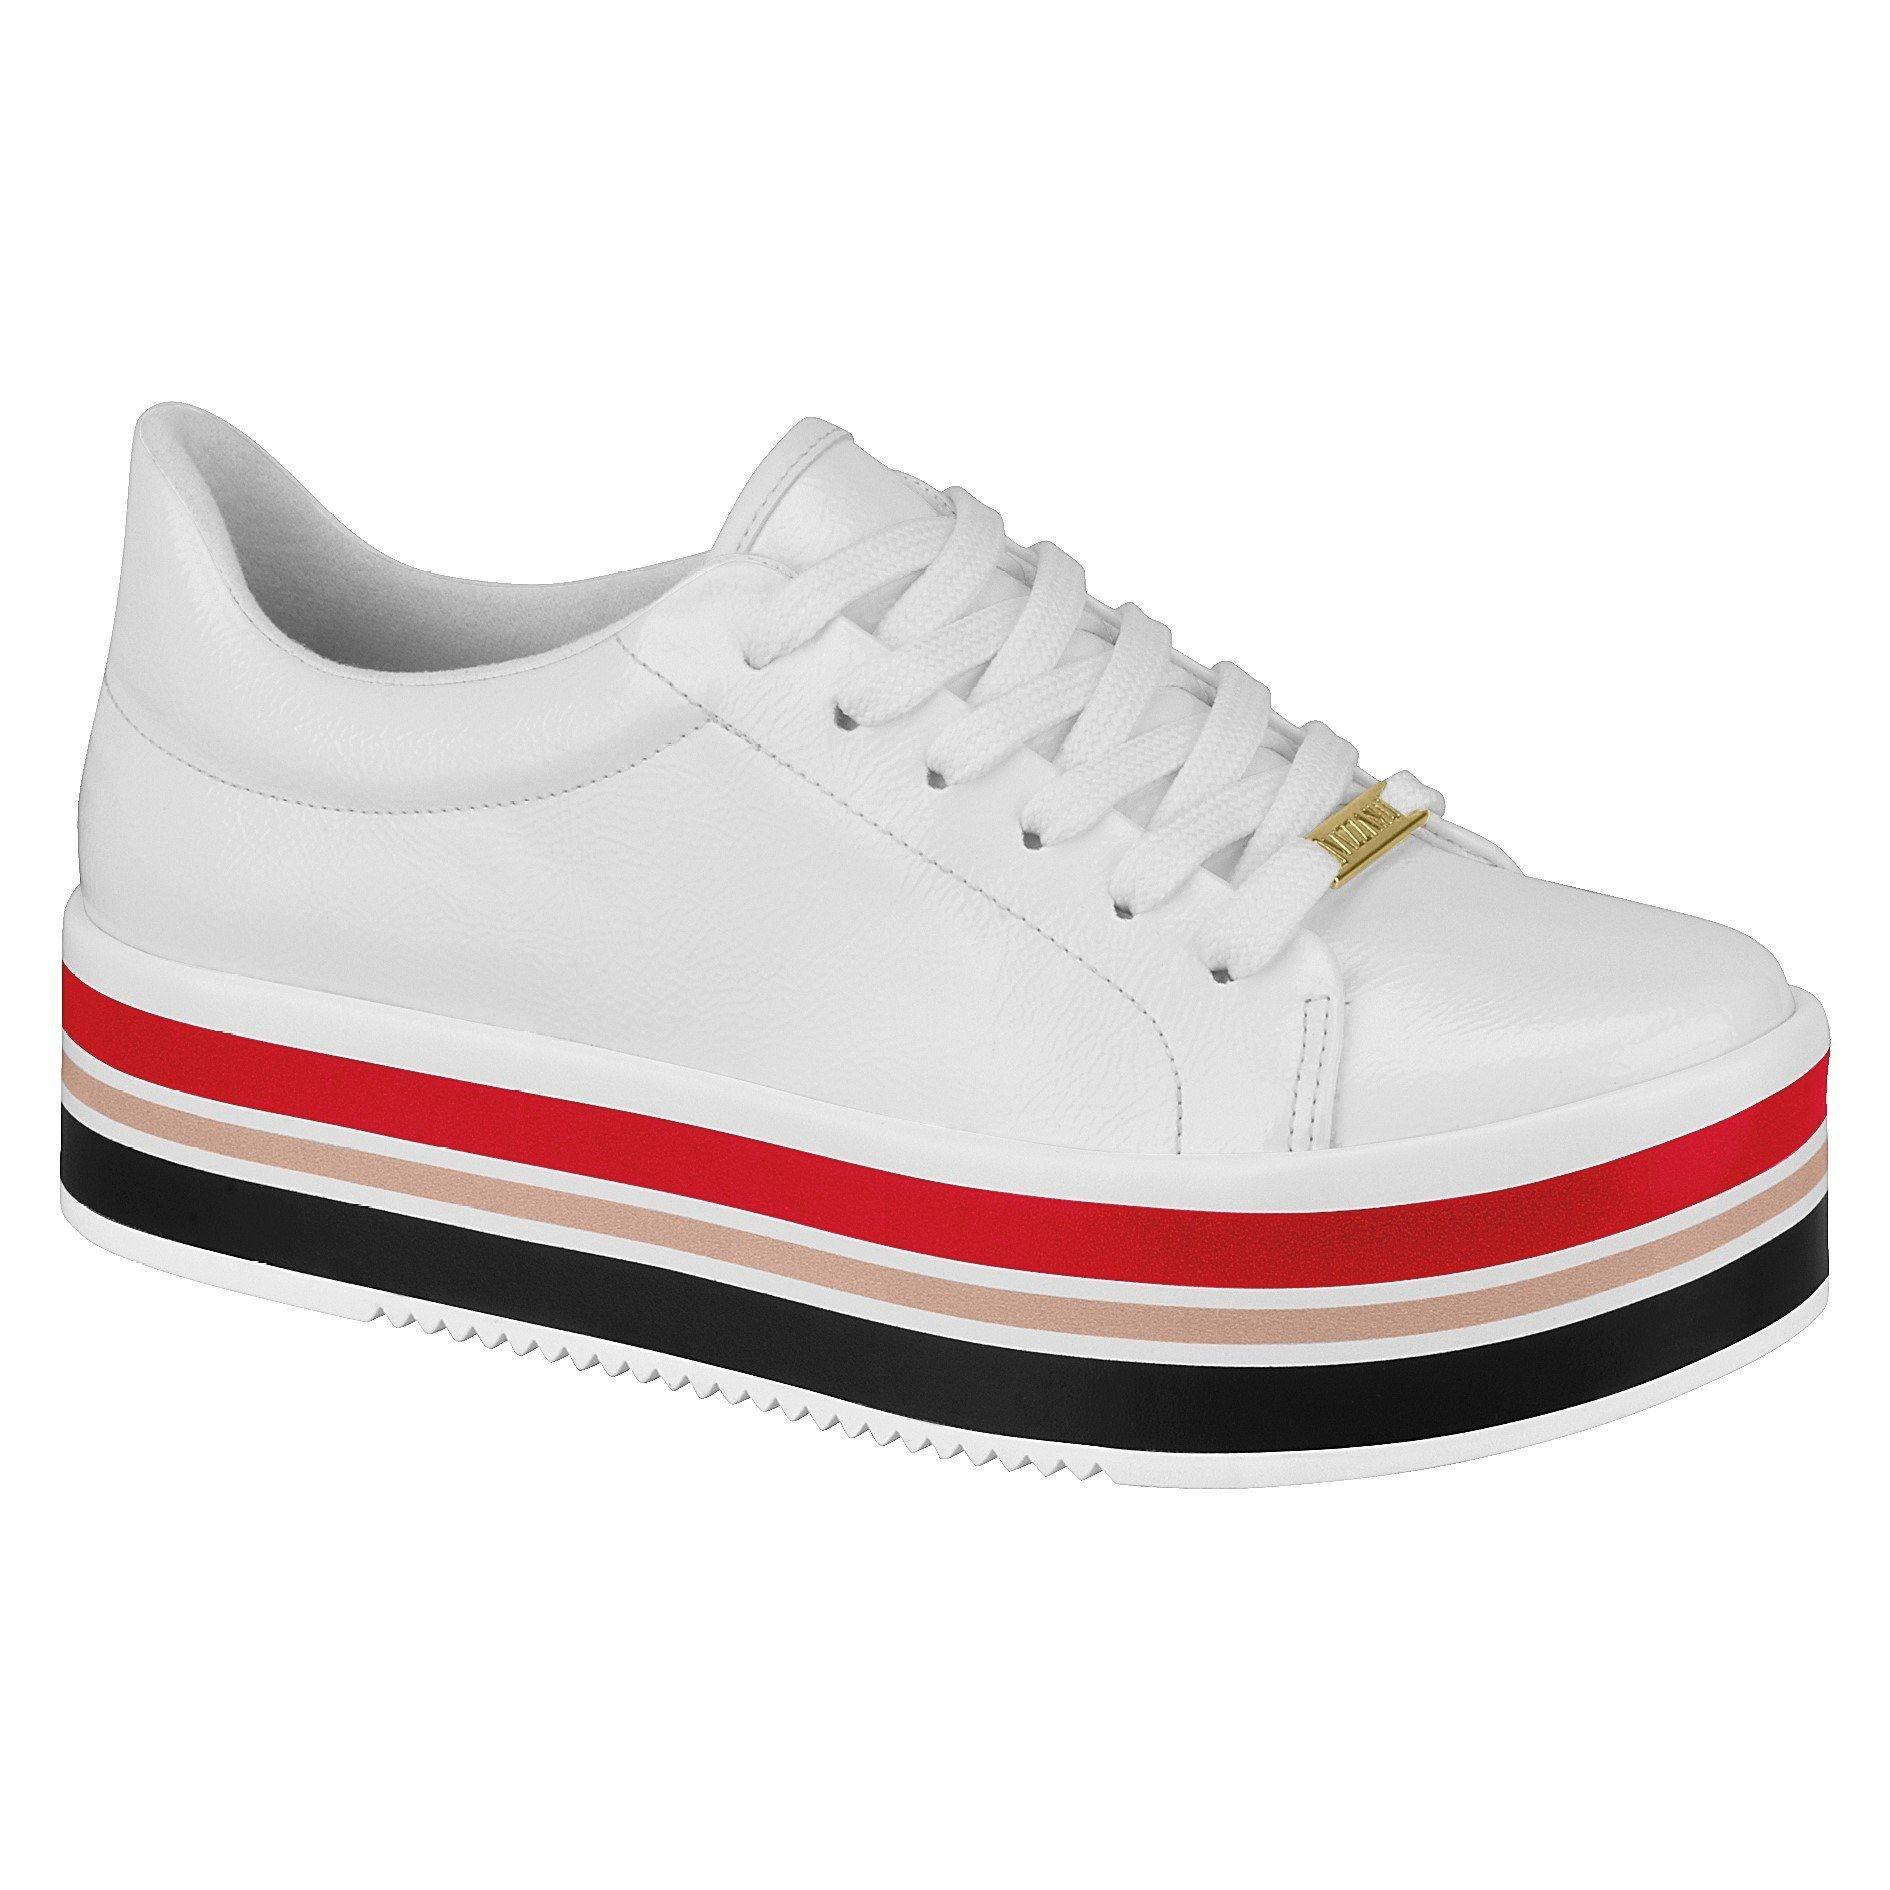 Vizzano 1298-100 Stripy Sole Sneaker in White Patent